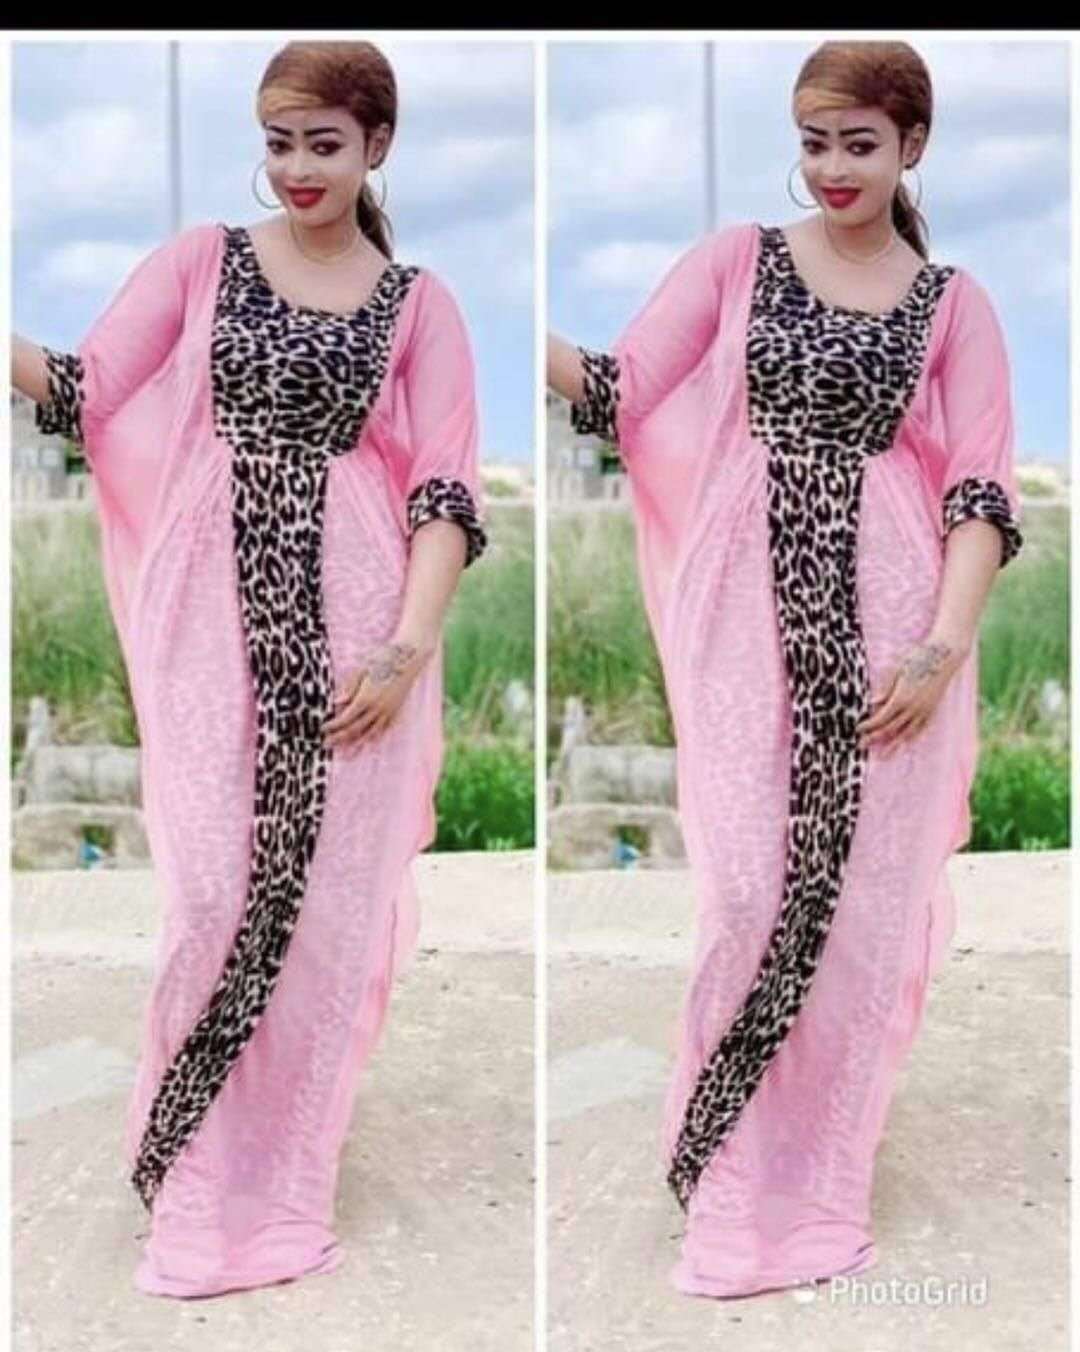 Abaya Dubai Turkey Arabic Caftan Muslim Fashion Leopard Dress American Clothing Dresses Abayas For Women Robe Islam Clothing